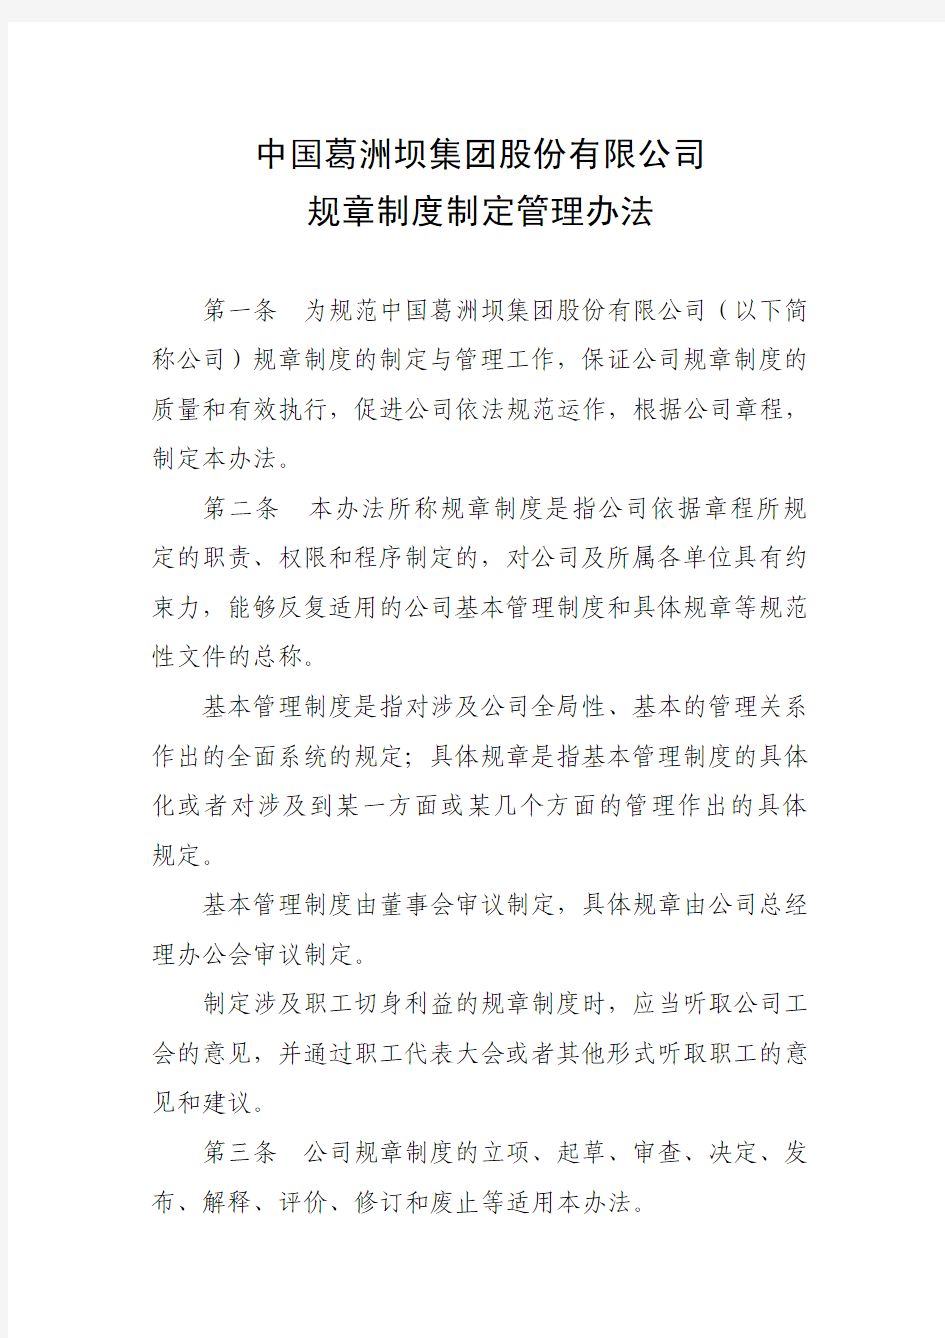 中国葛洲坝集团股份有限公司 规章制度制定管理办法